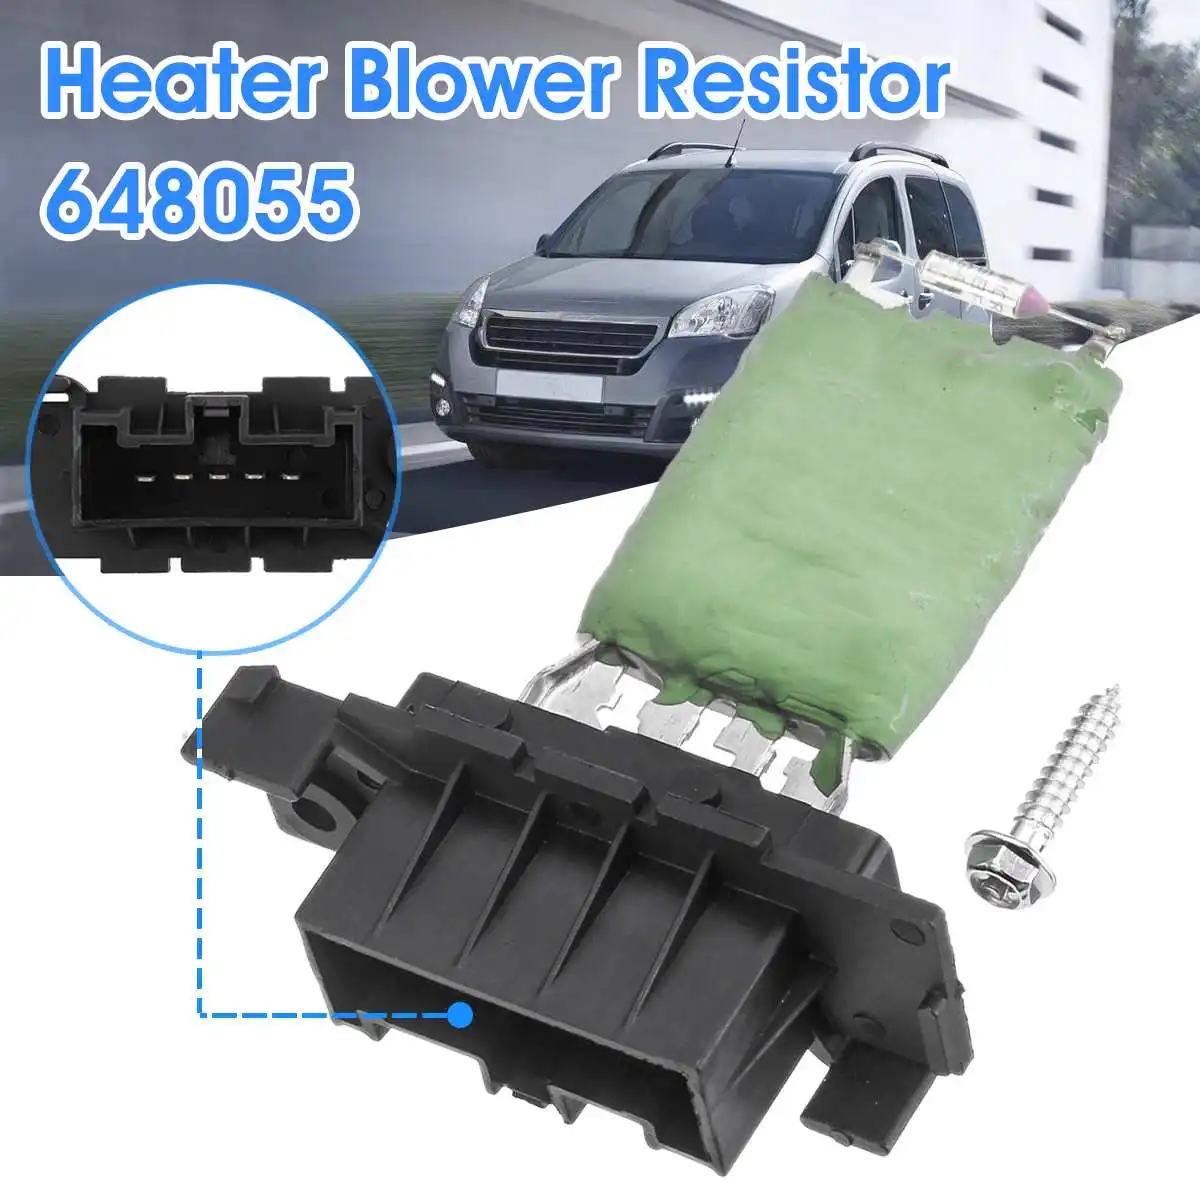 

Car Heater Blower Resistor For Citroen Berlingo For Peugeot Partner 2008-2016 6480.55 648055